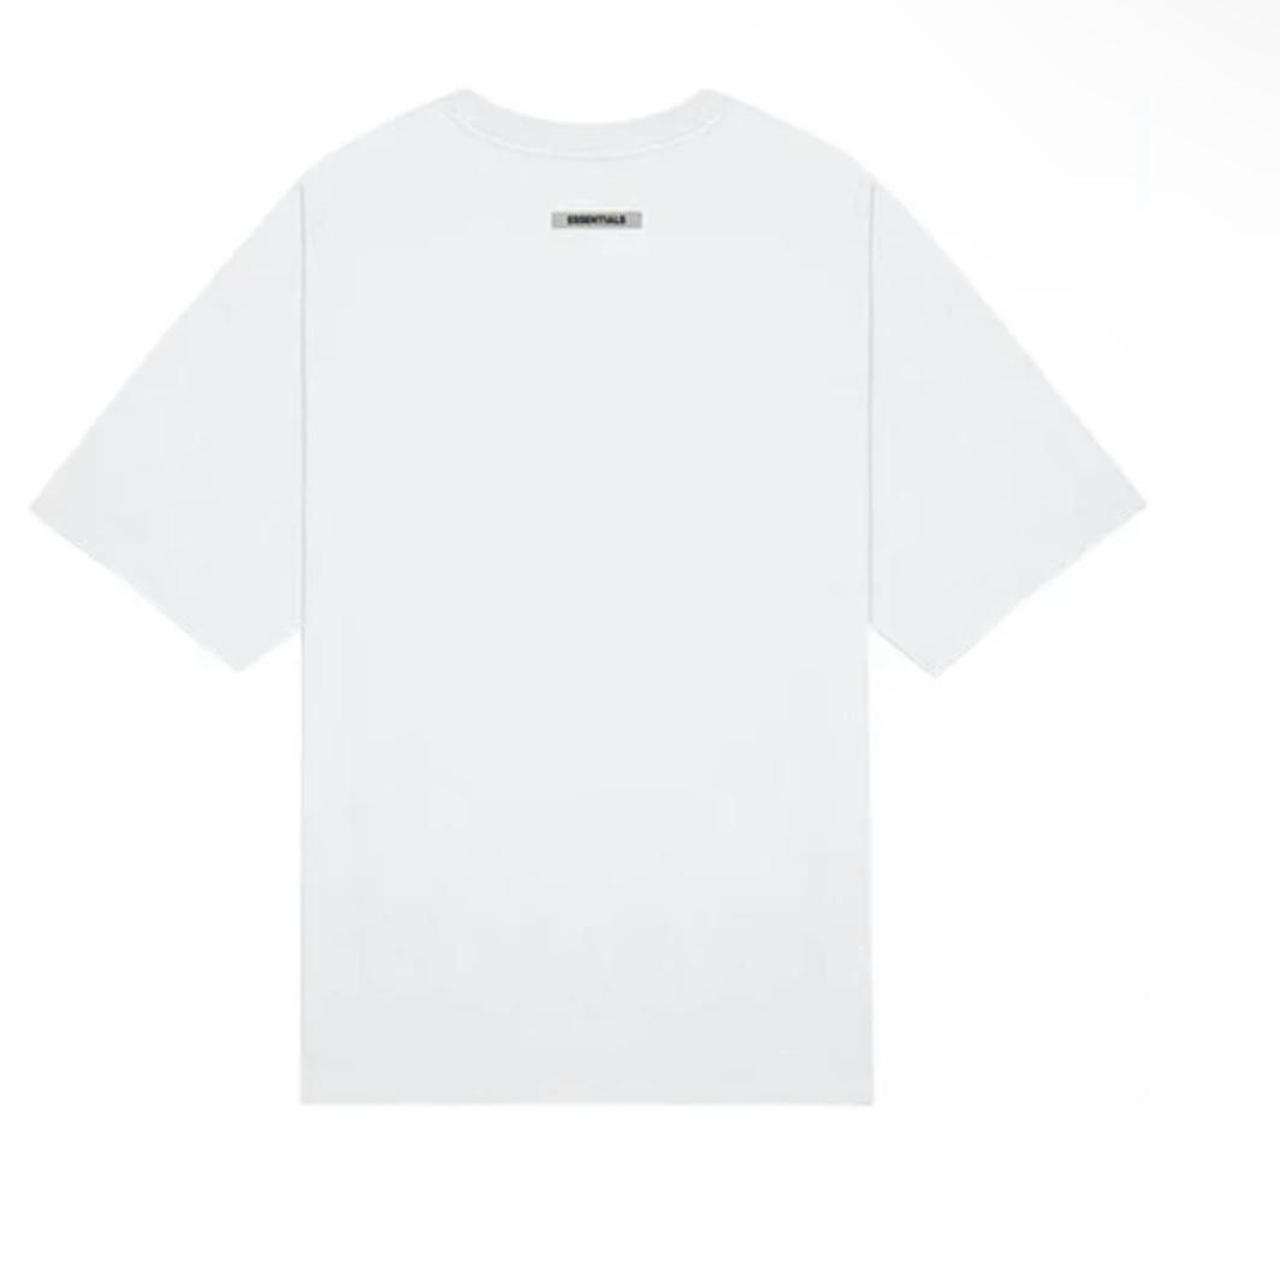 Fear of god essentials logo t-shirt Size:... - Depop